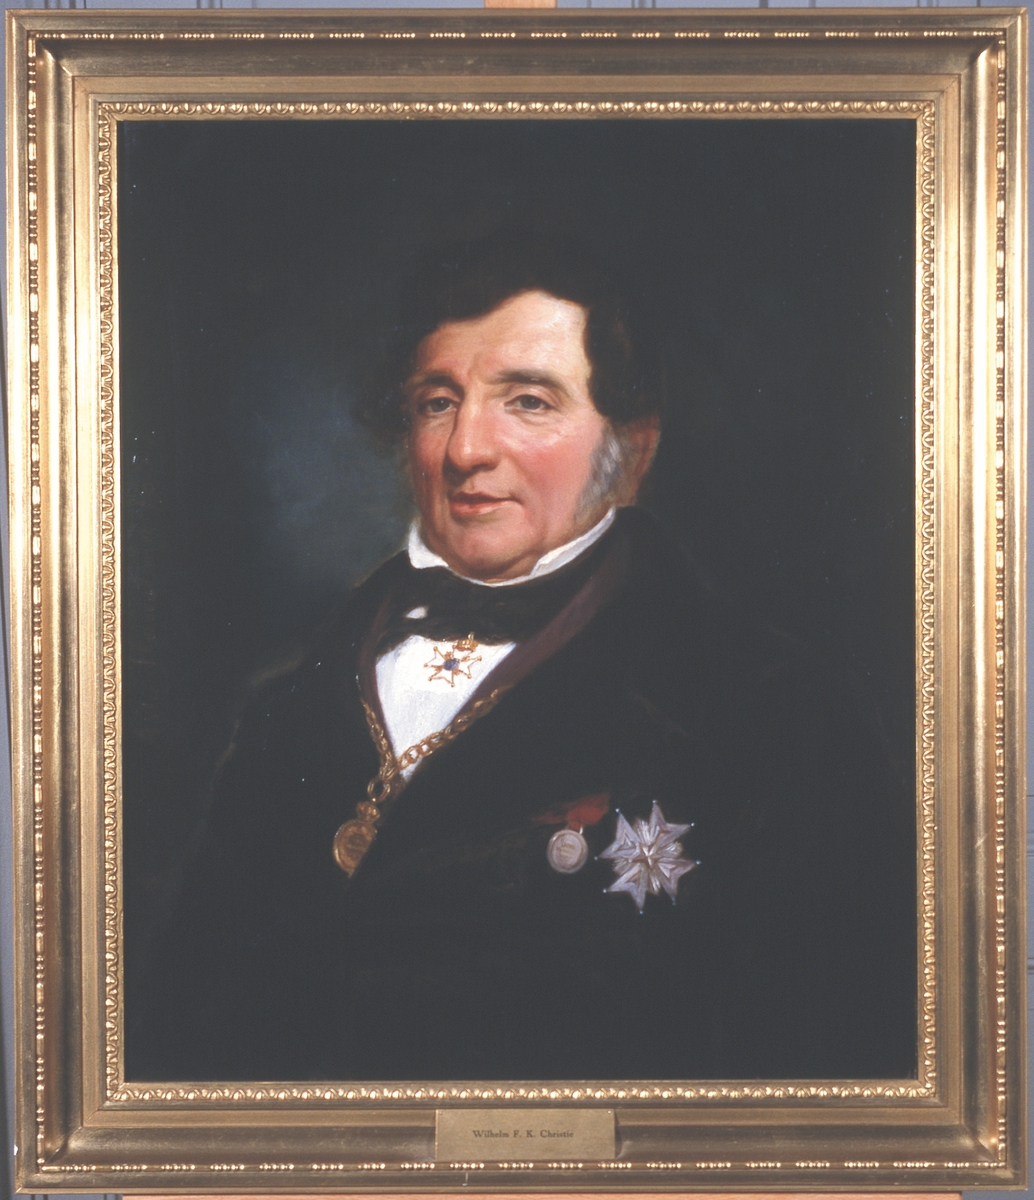 Portrett av Wilhelm F. K. Christie. 
Sort dress, sort sløyfe, hvit skjorte.  Mørkt hår. 2 ordener, 2 medaljer, klokke i kjede rundt halsen.